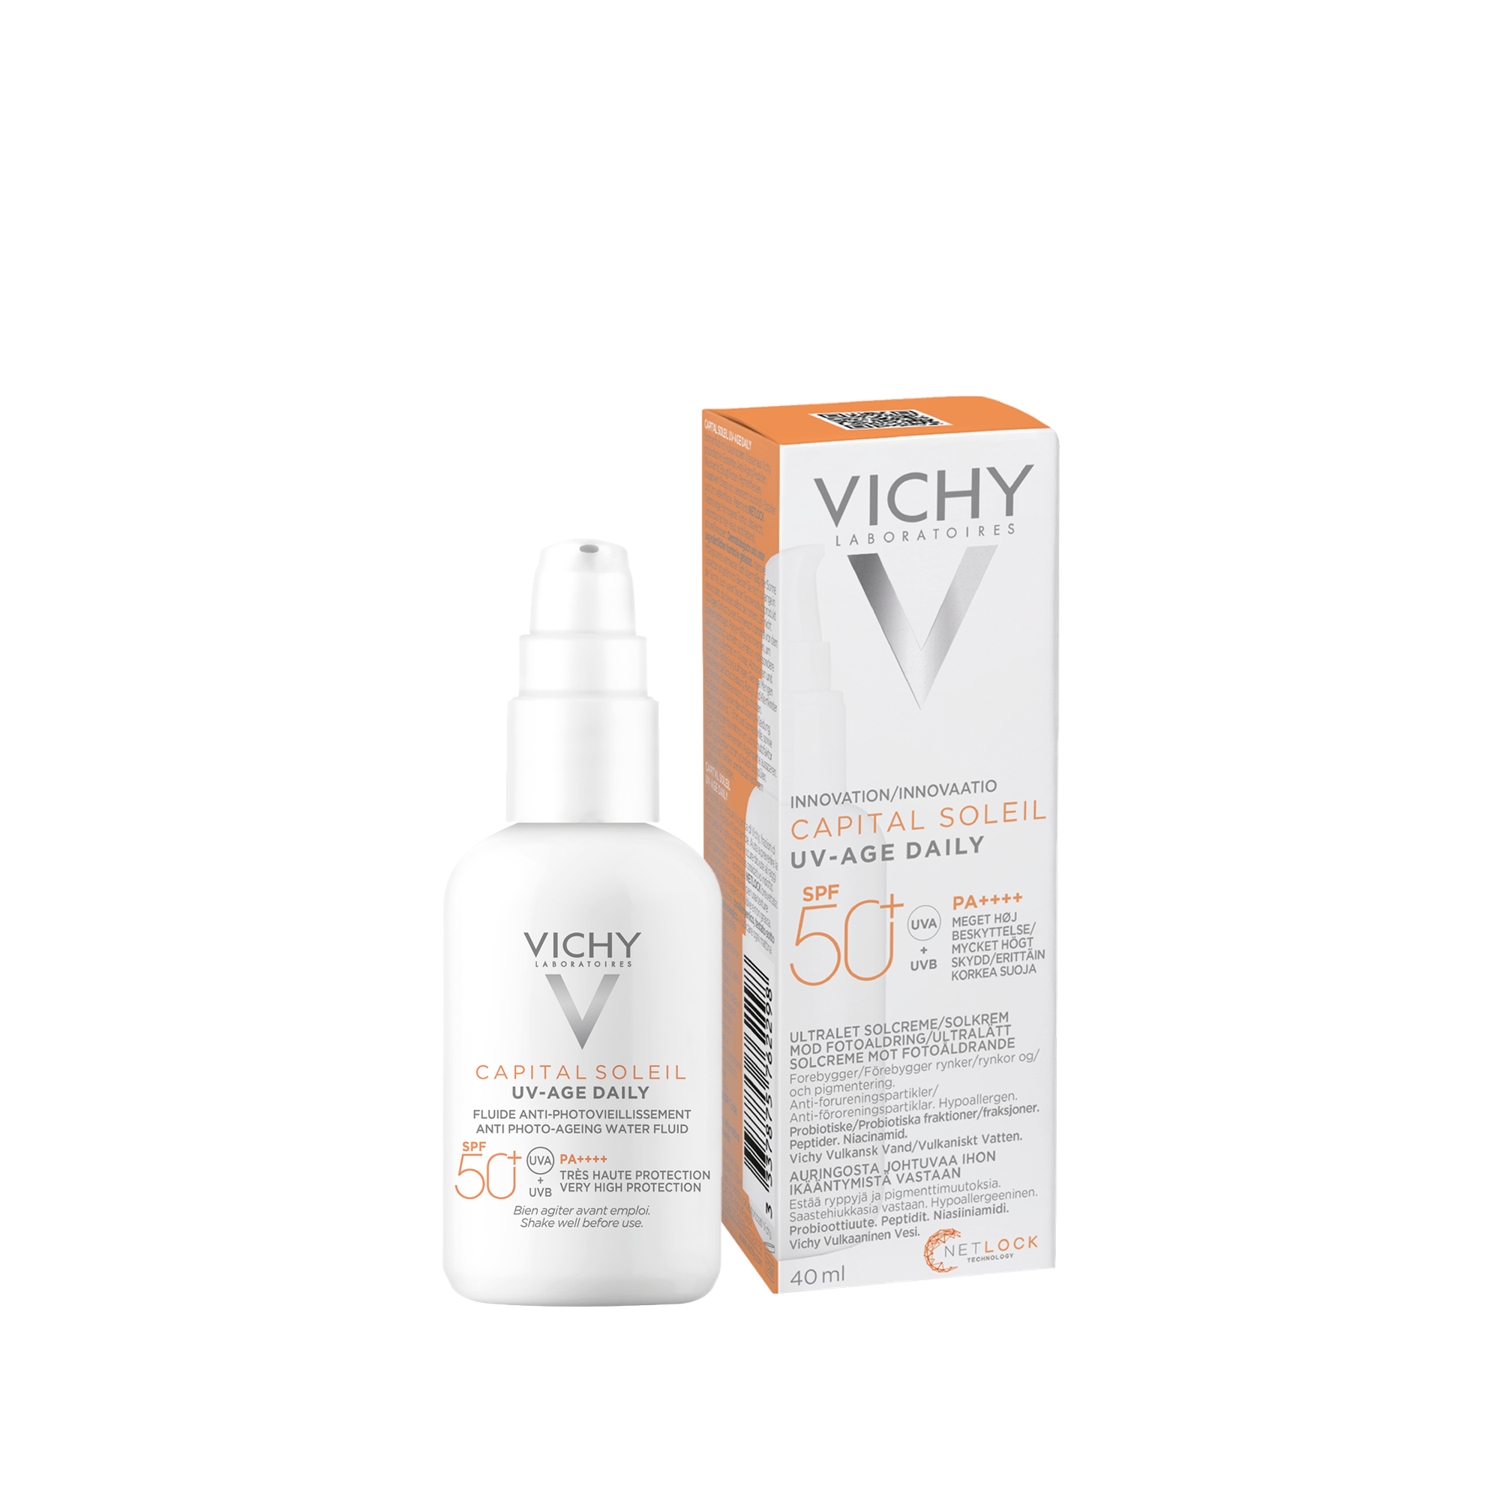 Vichy Capital Soleil UV-age Daily spf50+ купить. Vichy uv age daily